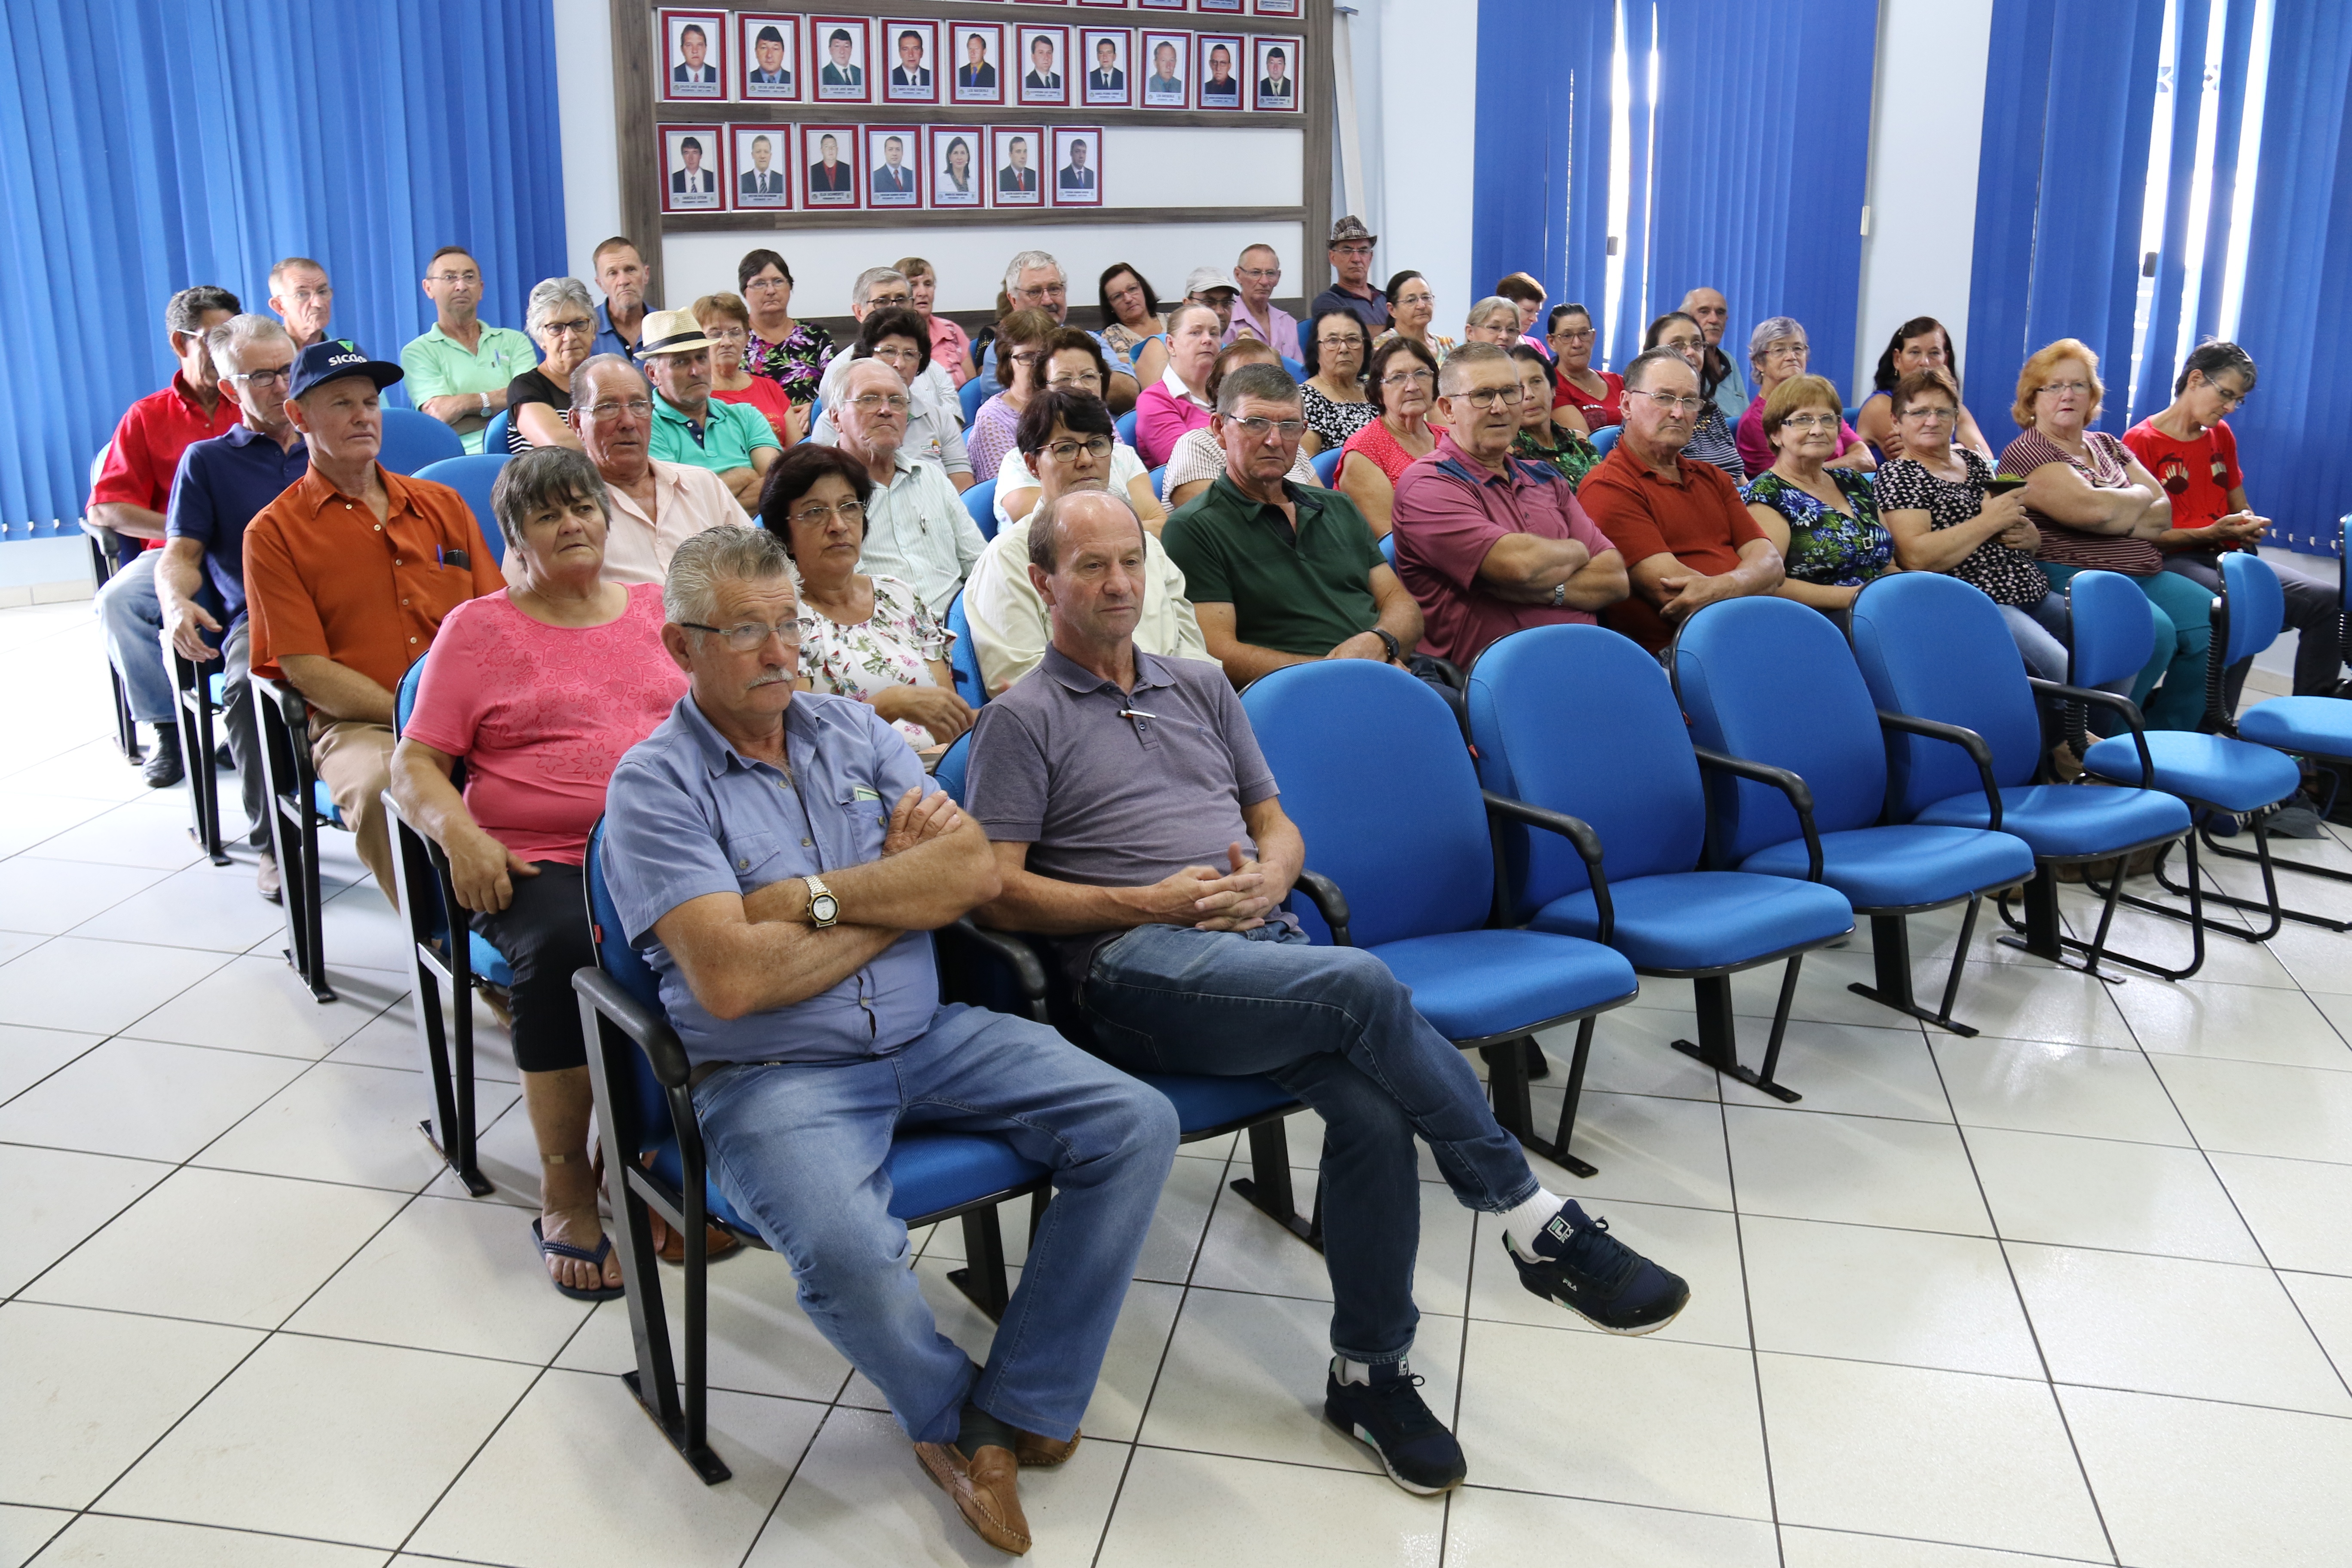 Representantes dos 21 grupos de idosos do município estiveram presentes